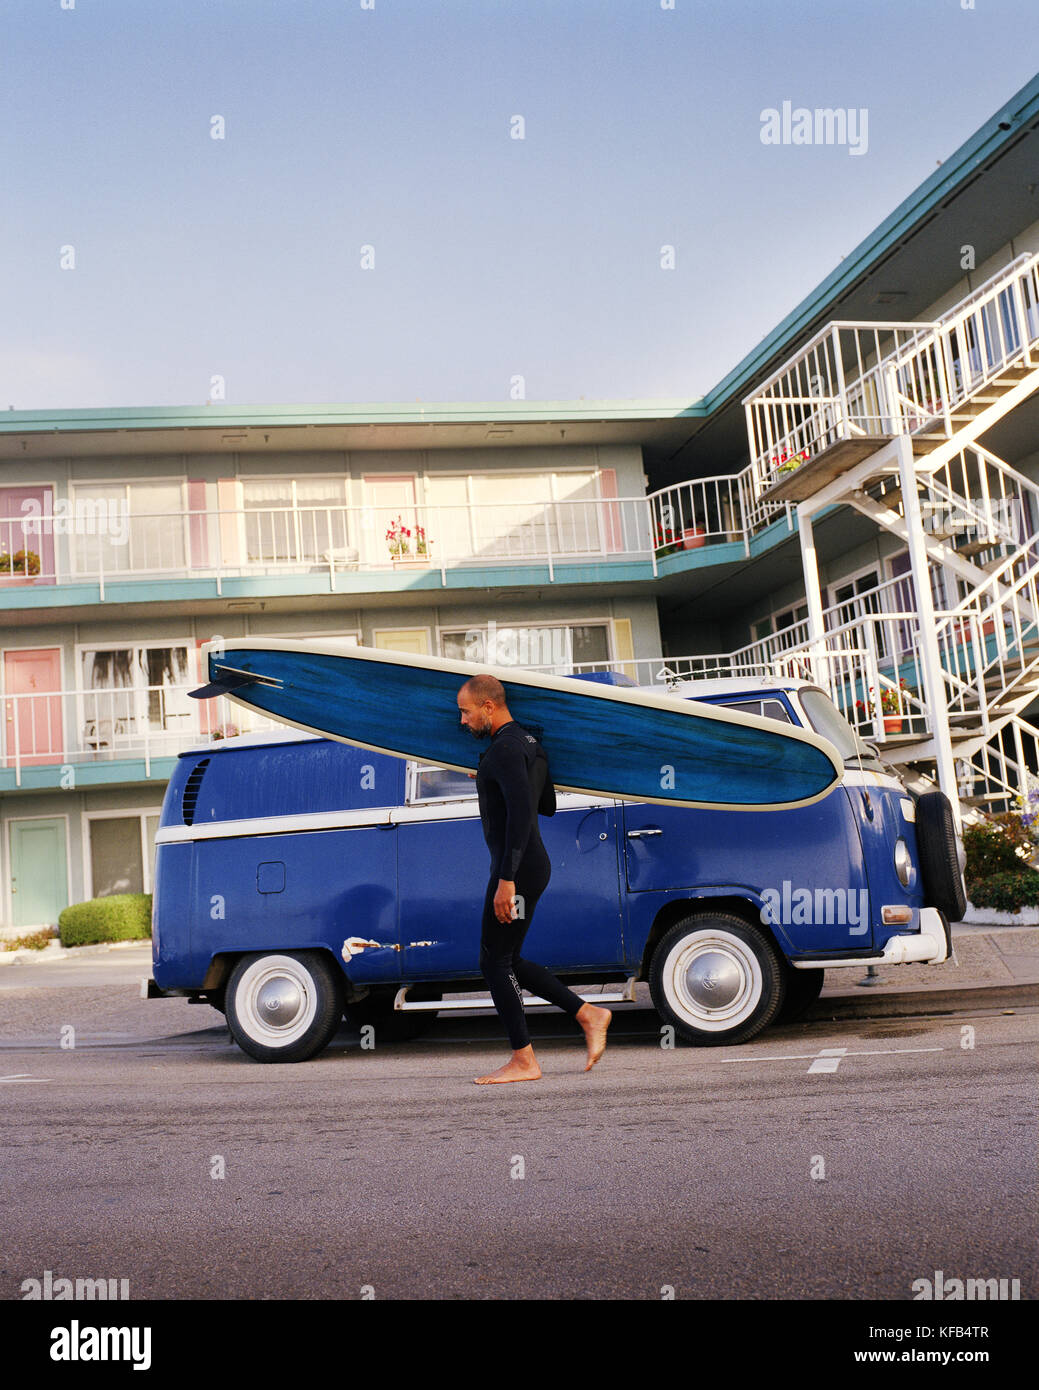 Usa, Kalifornien, Capitola, ein Surfer mit einem blauen longboard Spaziergänge in fronr eines blauen VW-Bus auf dem Weg zum Surfen Stockfoto